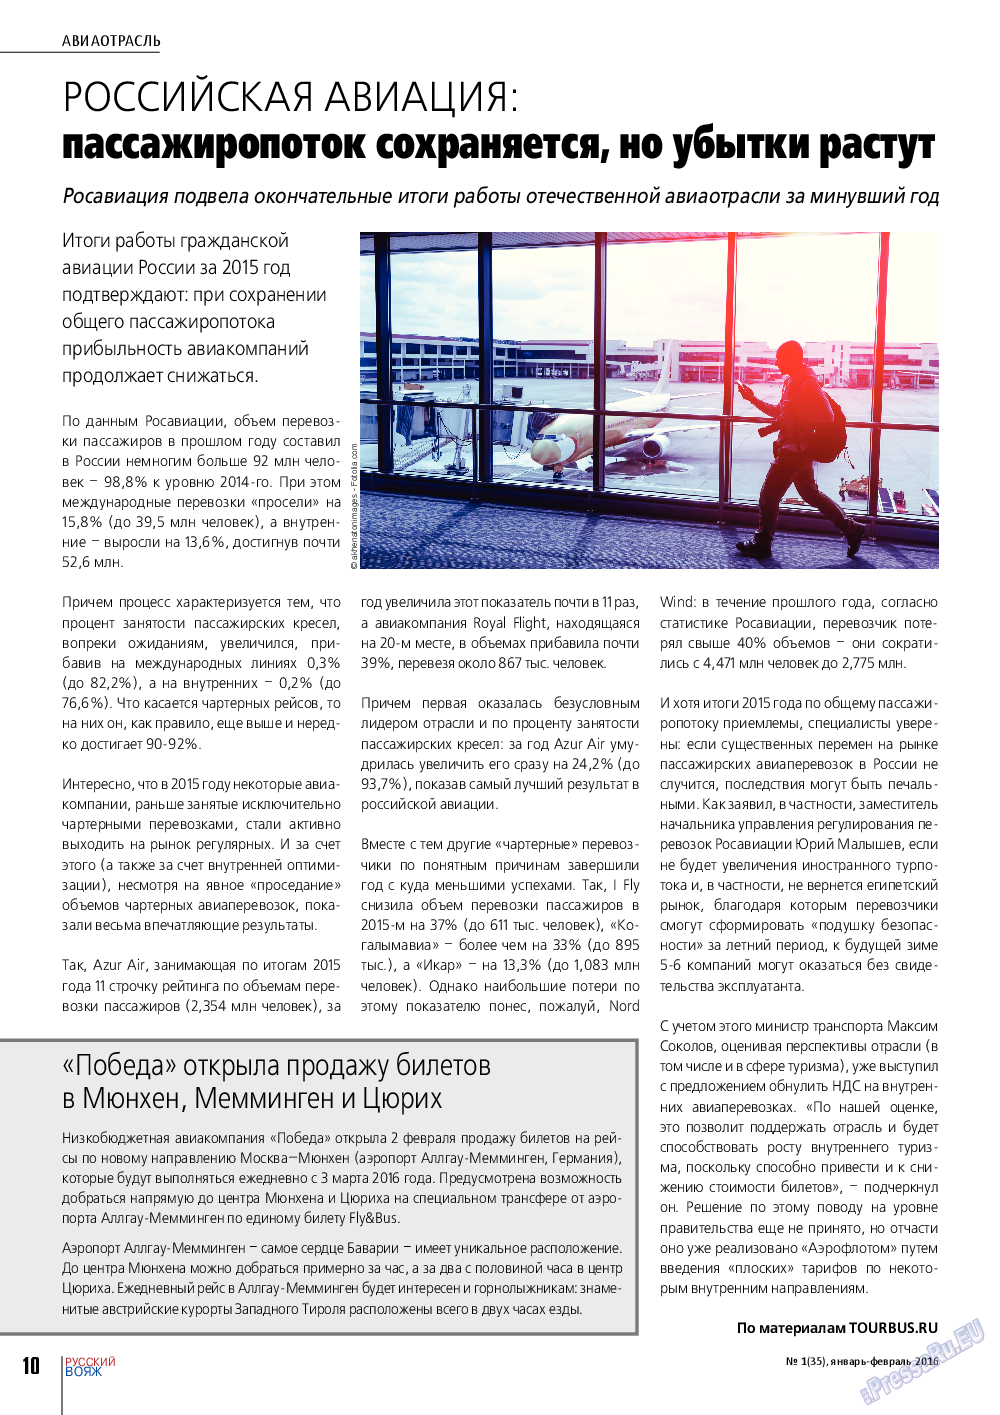 Русский вояж, журнал. 2016 №1 стр.10